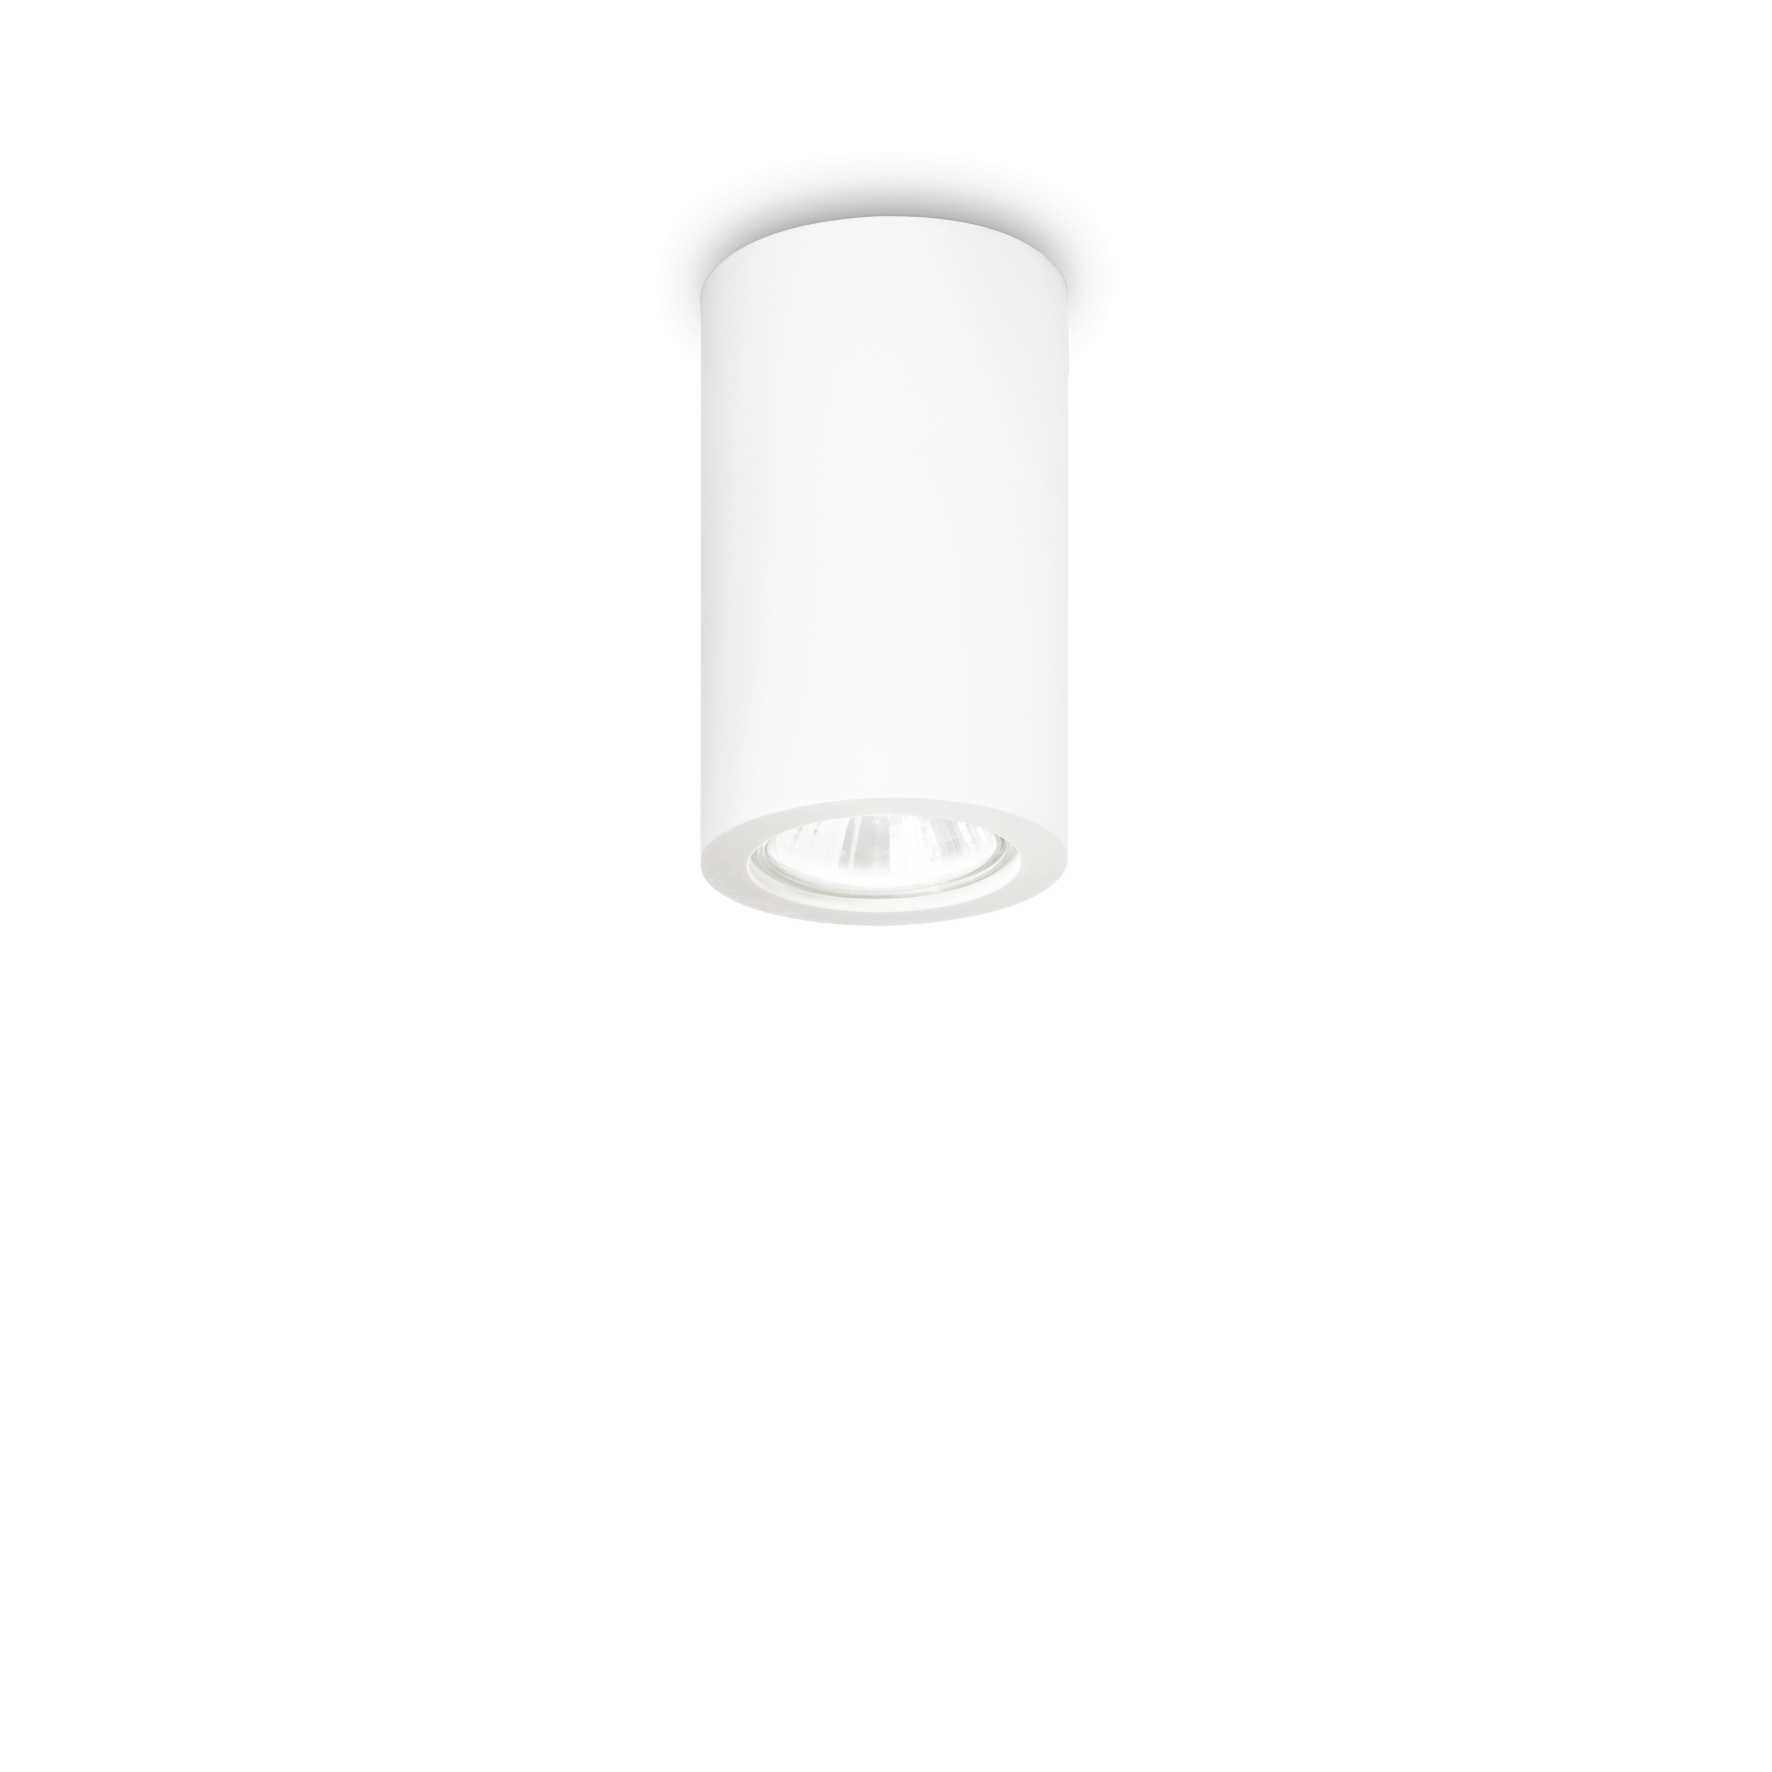 AD hotelska oprema Stropna lampa Tower pl1- okrugla slika proizvoda